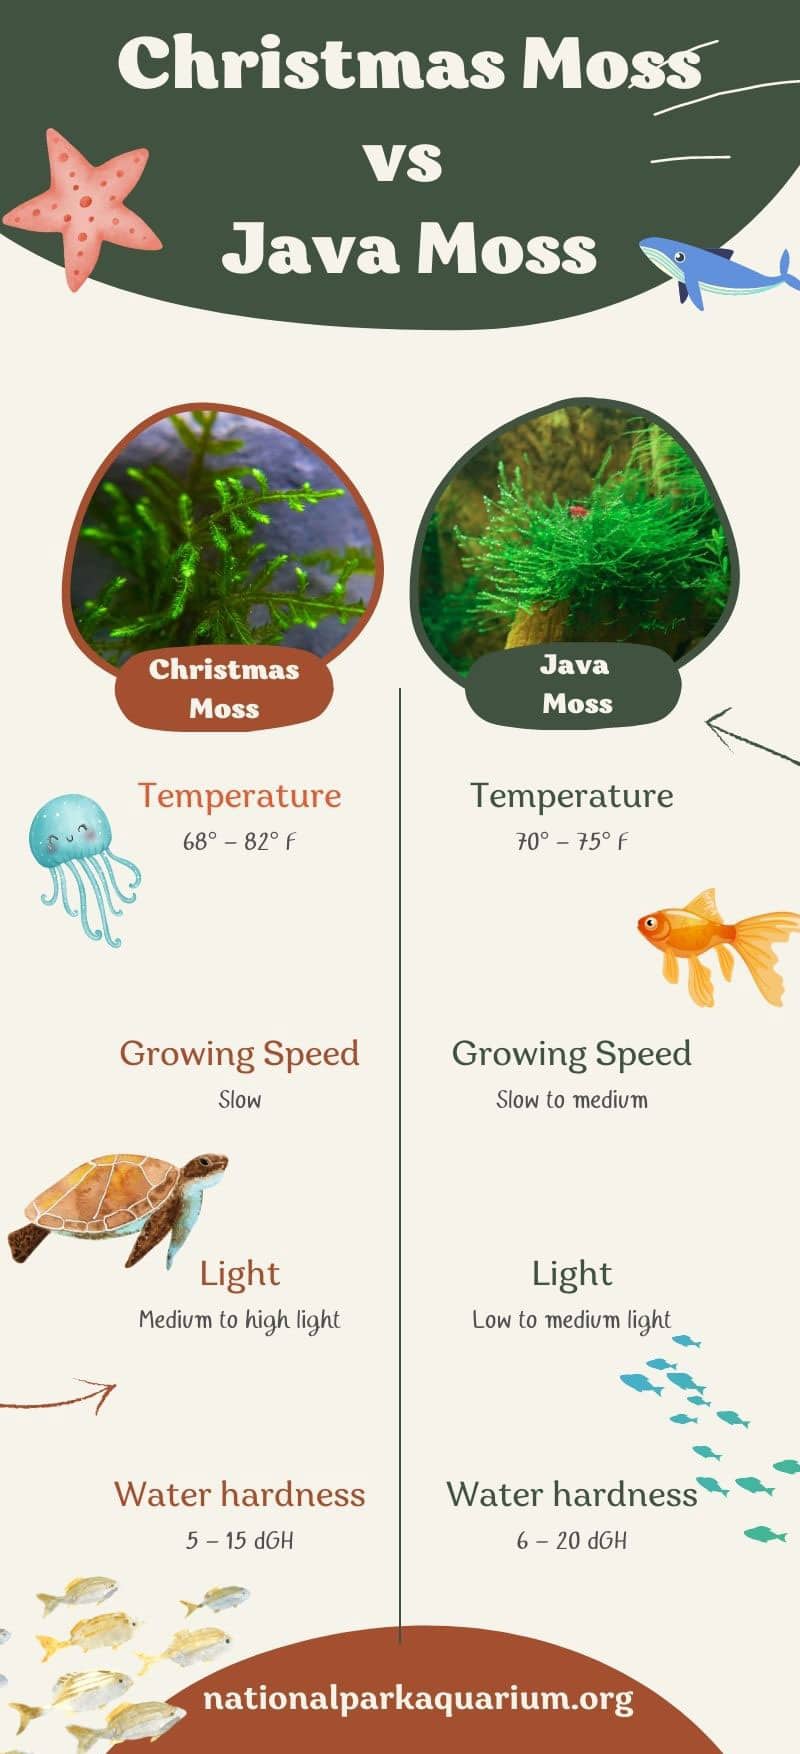 Christmas Moss vs Java Moss